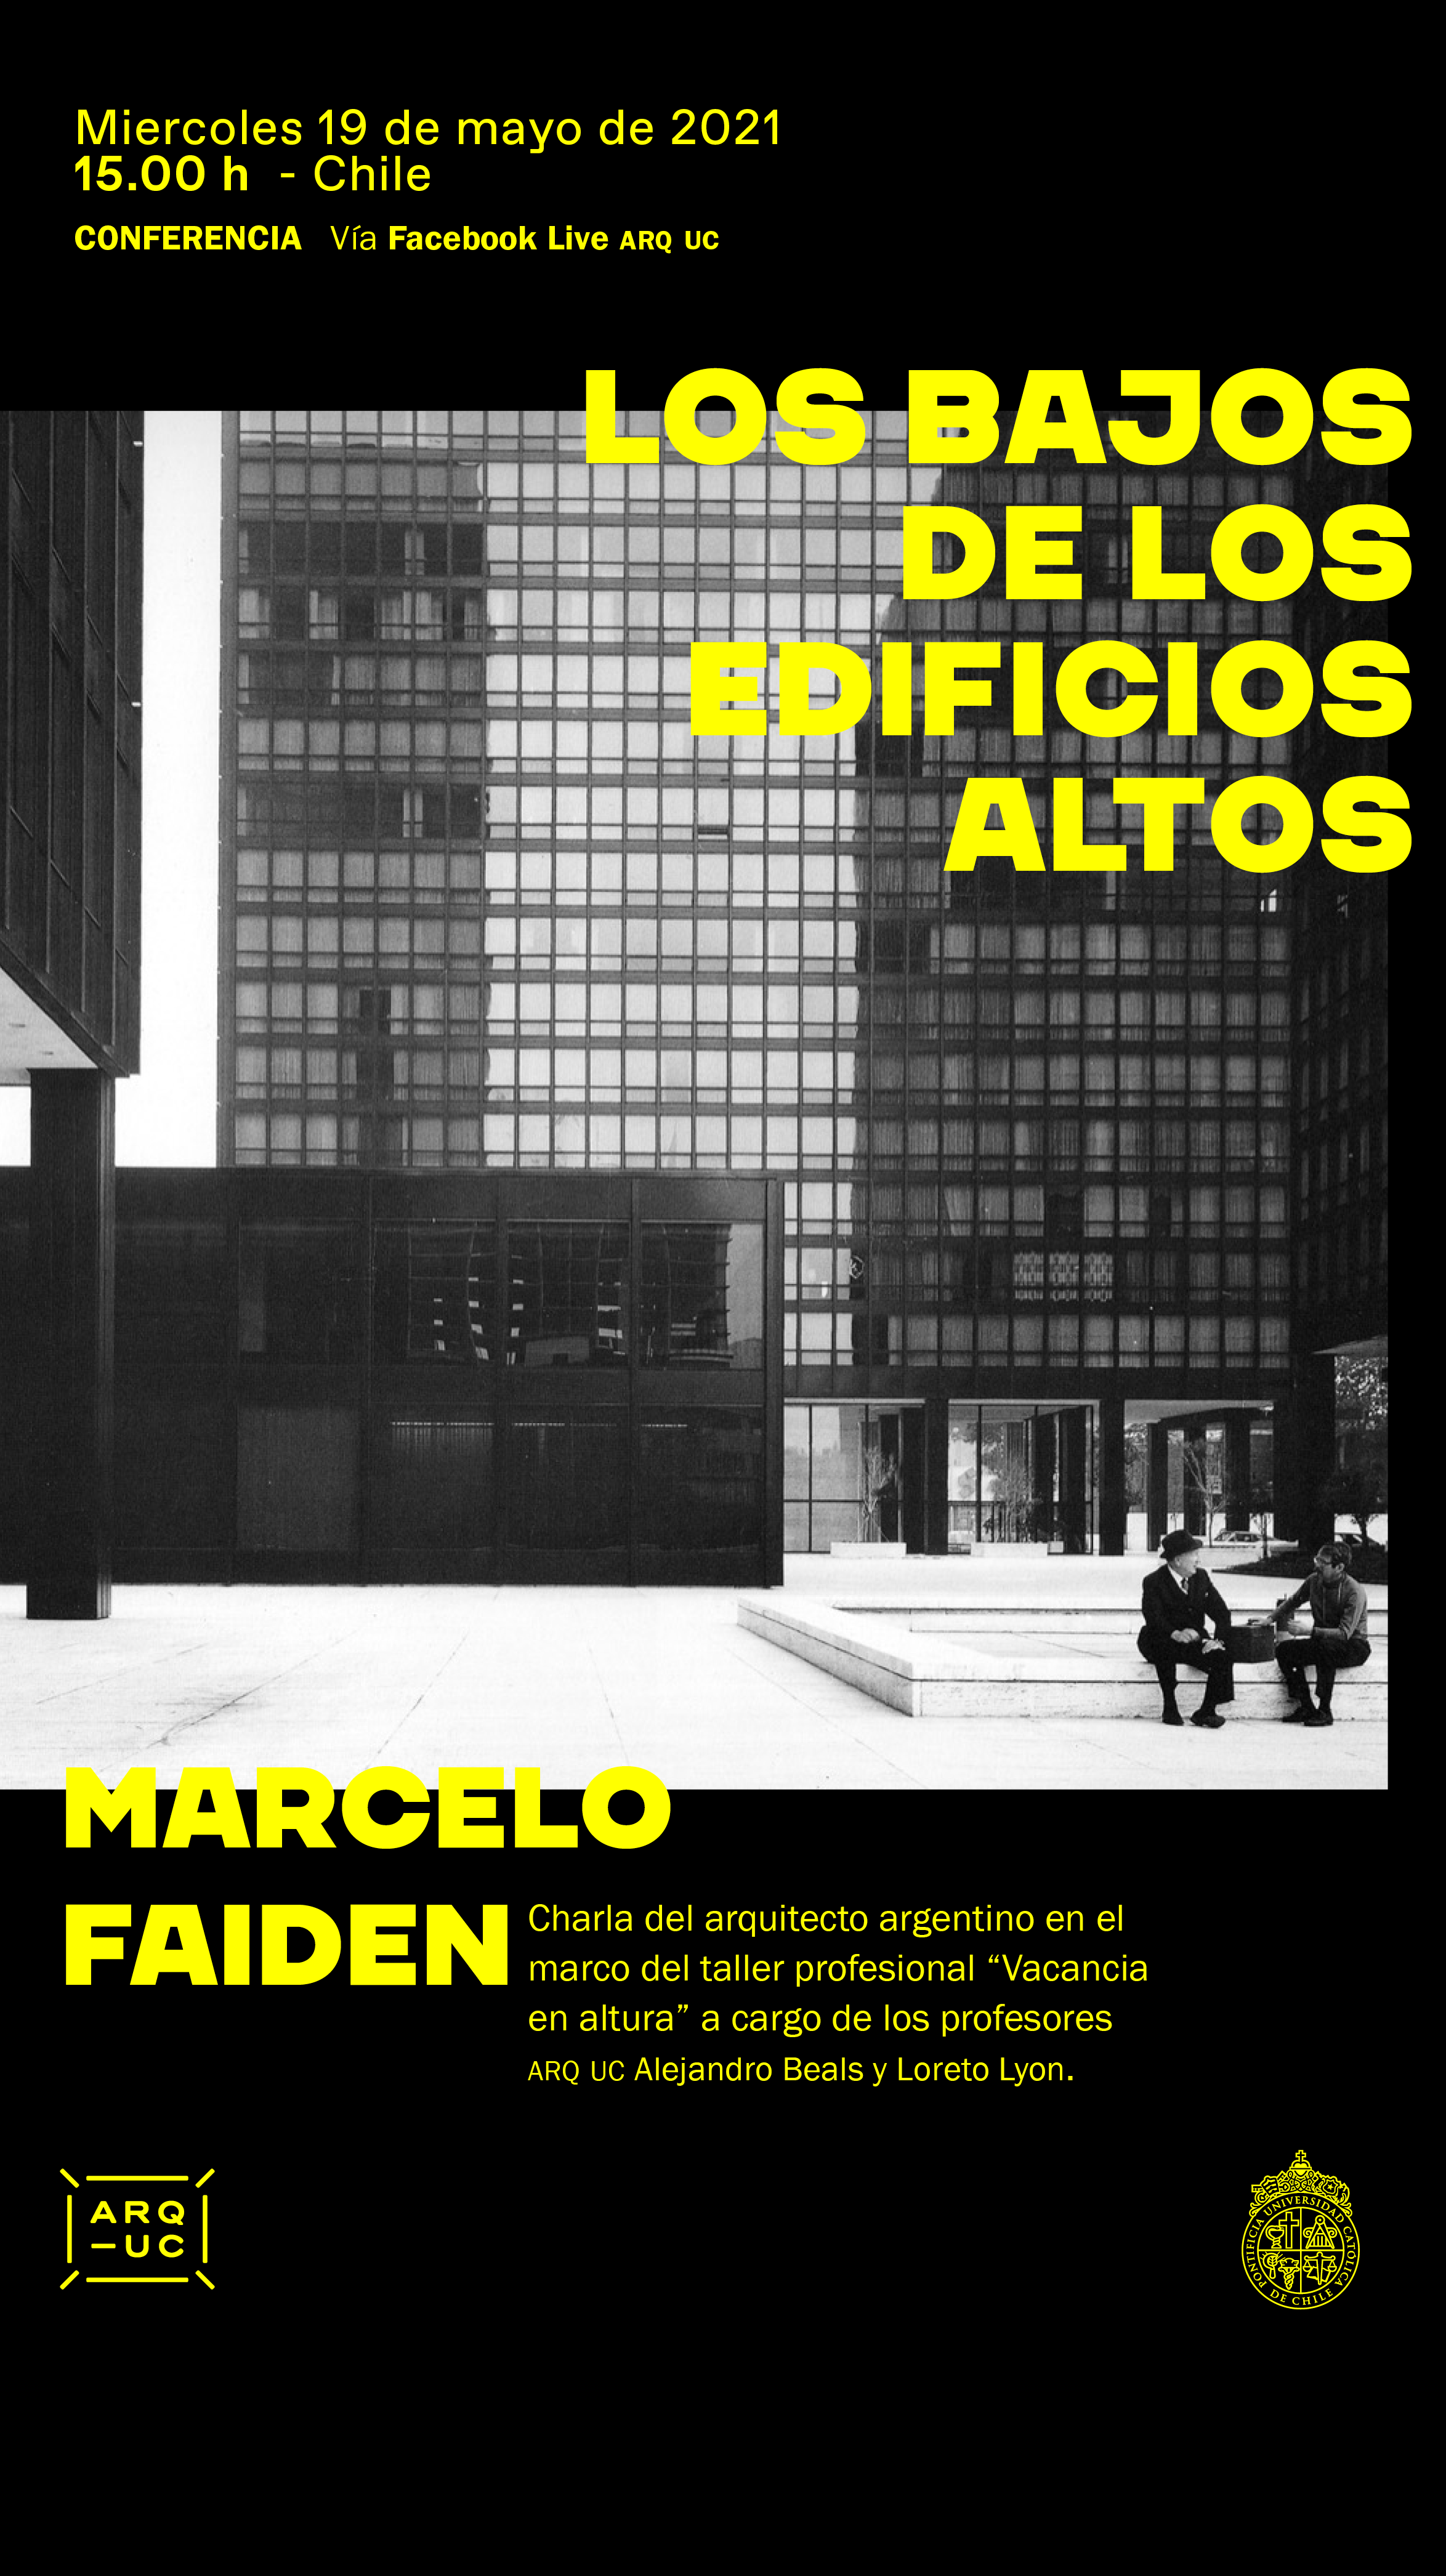 20210512_AFICHE_MARQ_Los_bajos_de_los_edificios_altosa.png